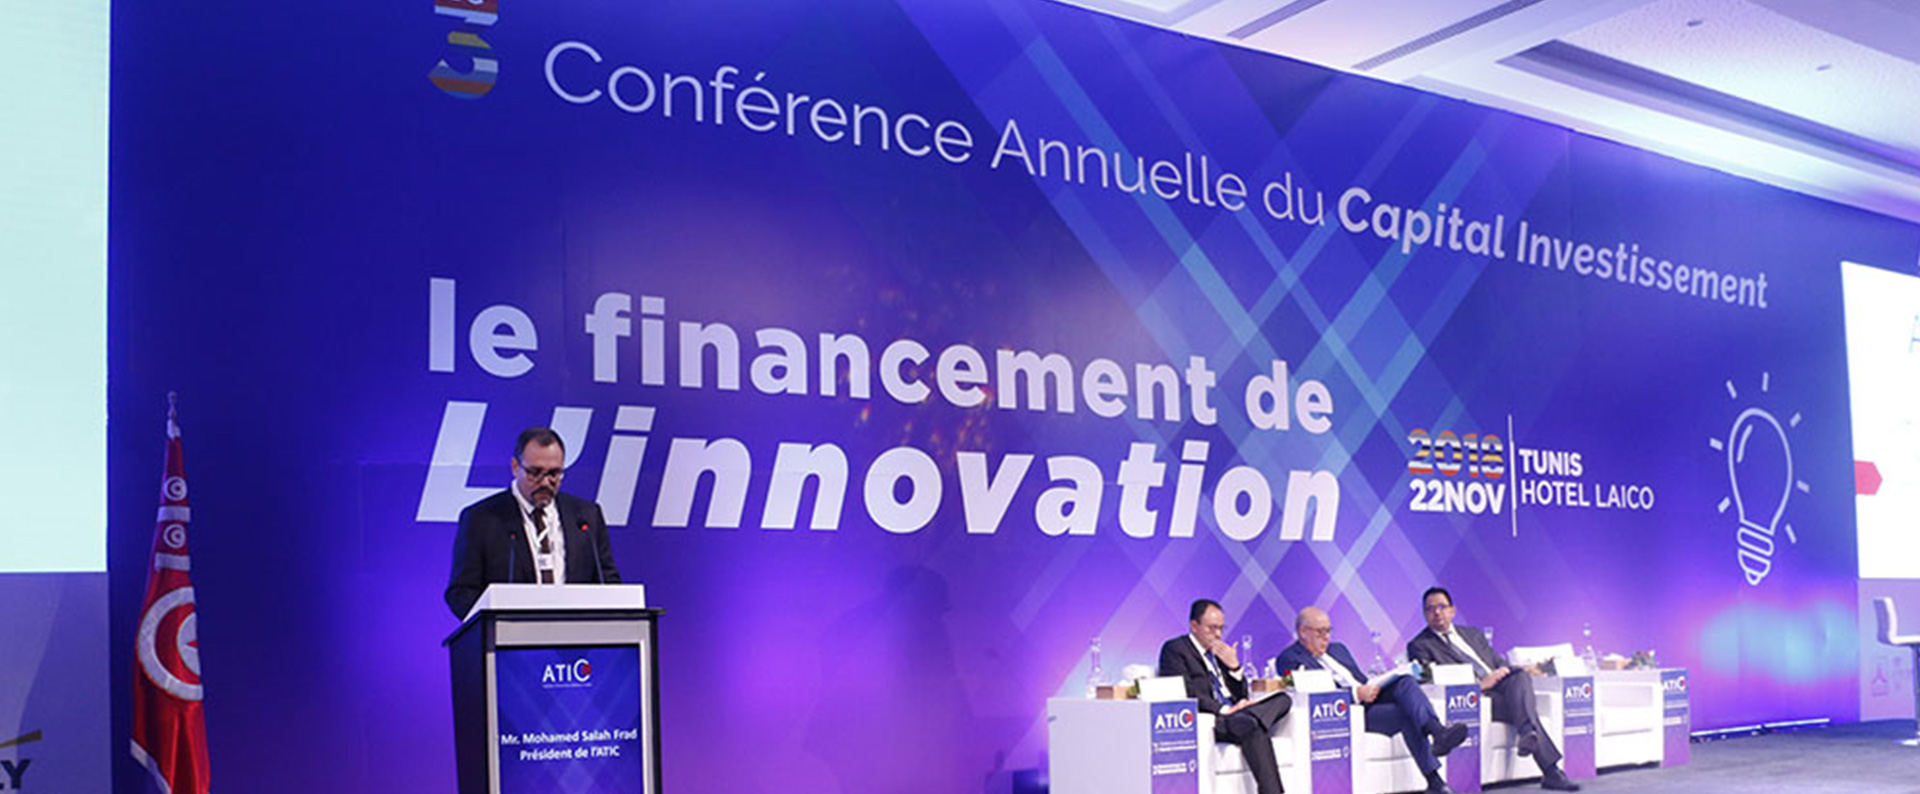 Le Capital investissement et le financement de l’innovation <br> 3ème conférence annuelle de l’ATIC